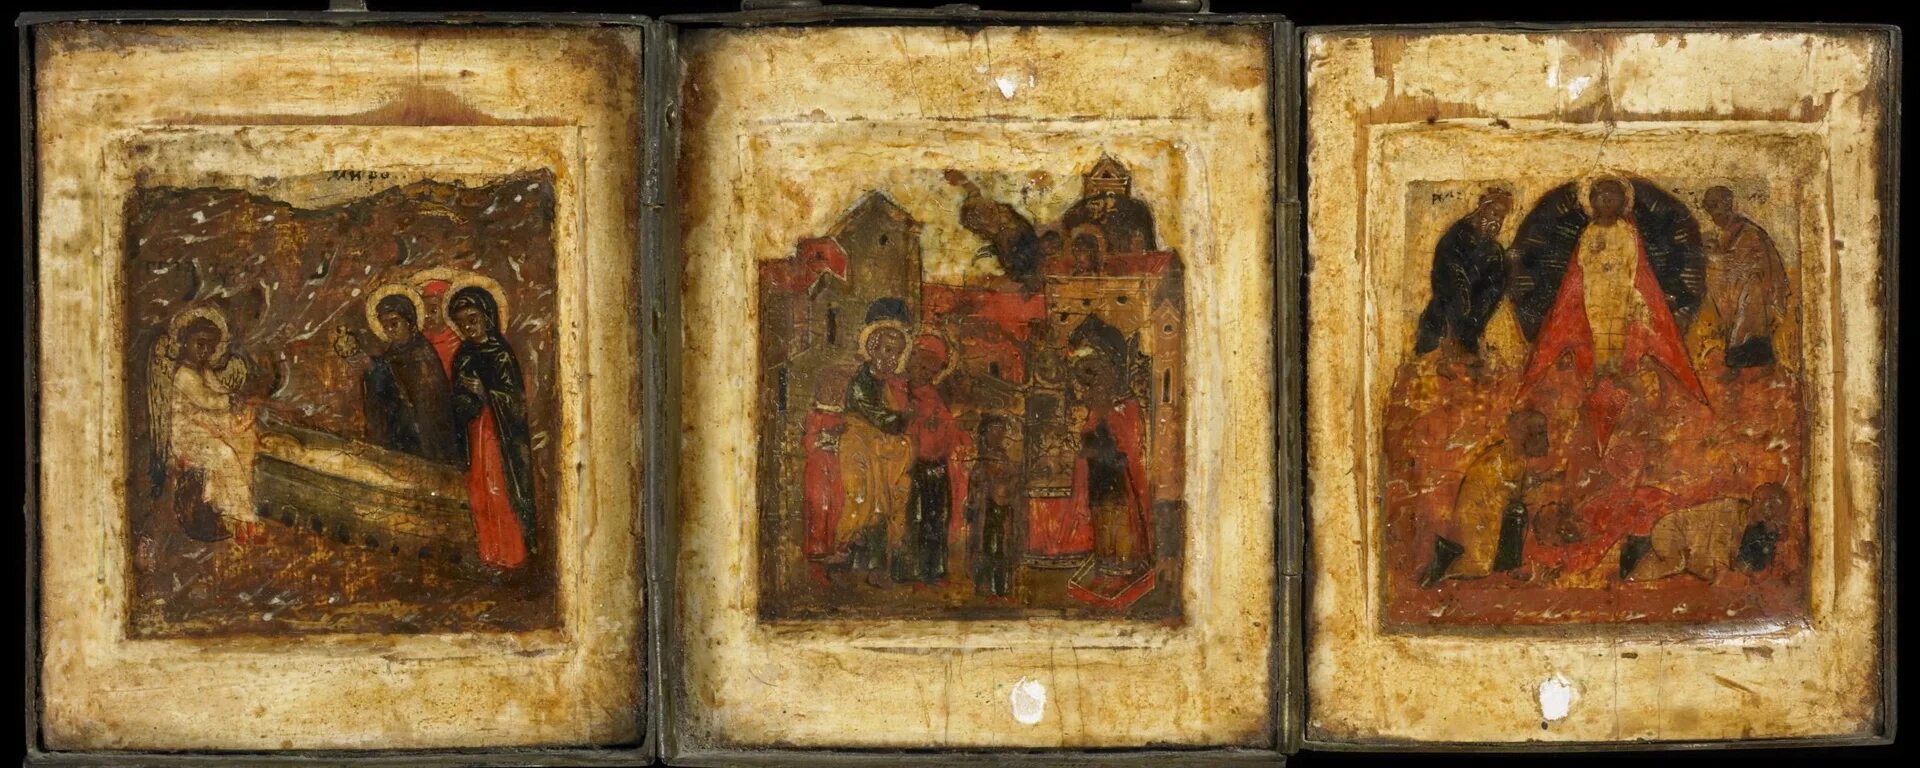 После пожара сохранились иконы. Триптих Рублева. Старинные иконы. Икона триптих.